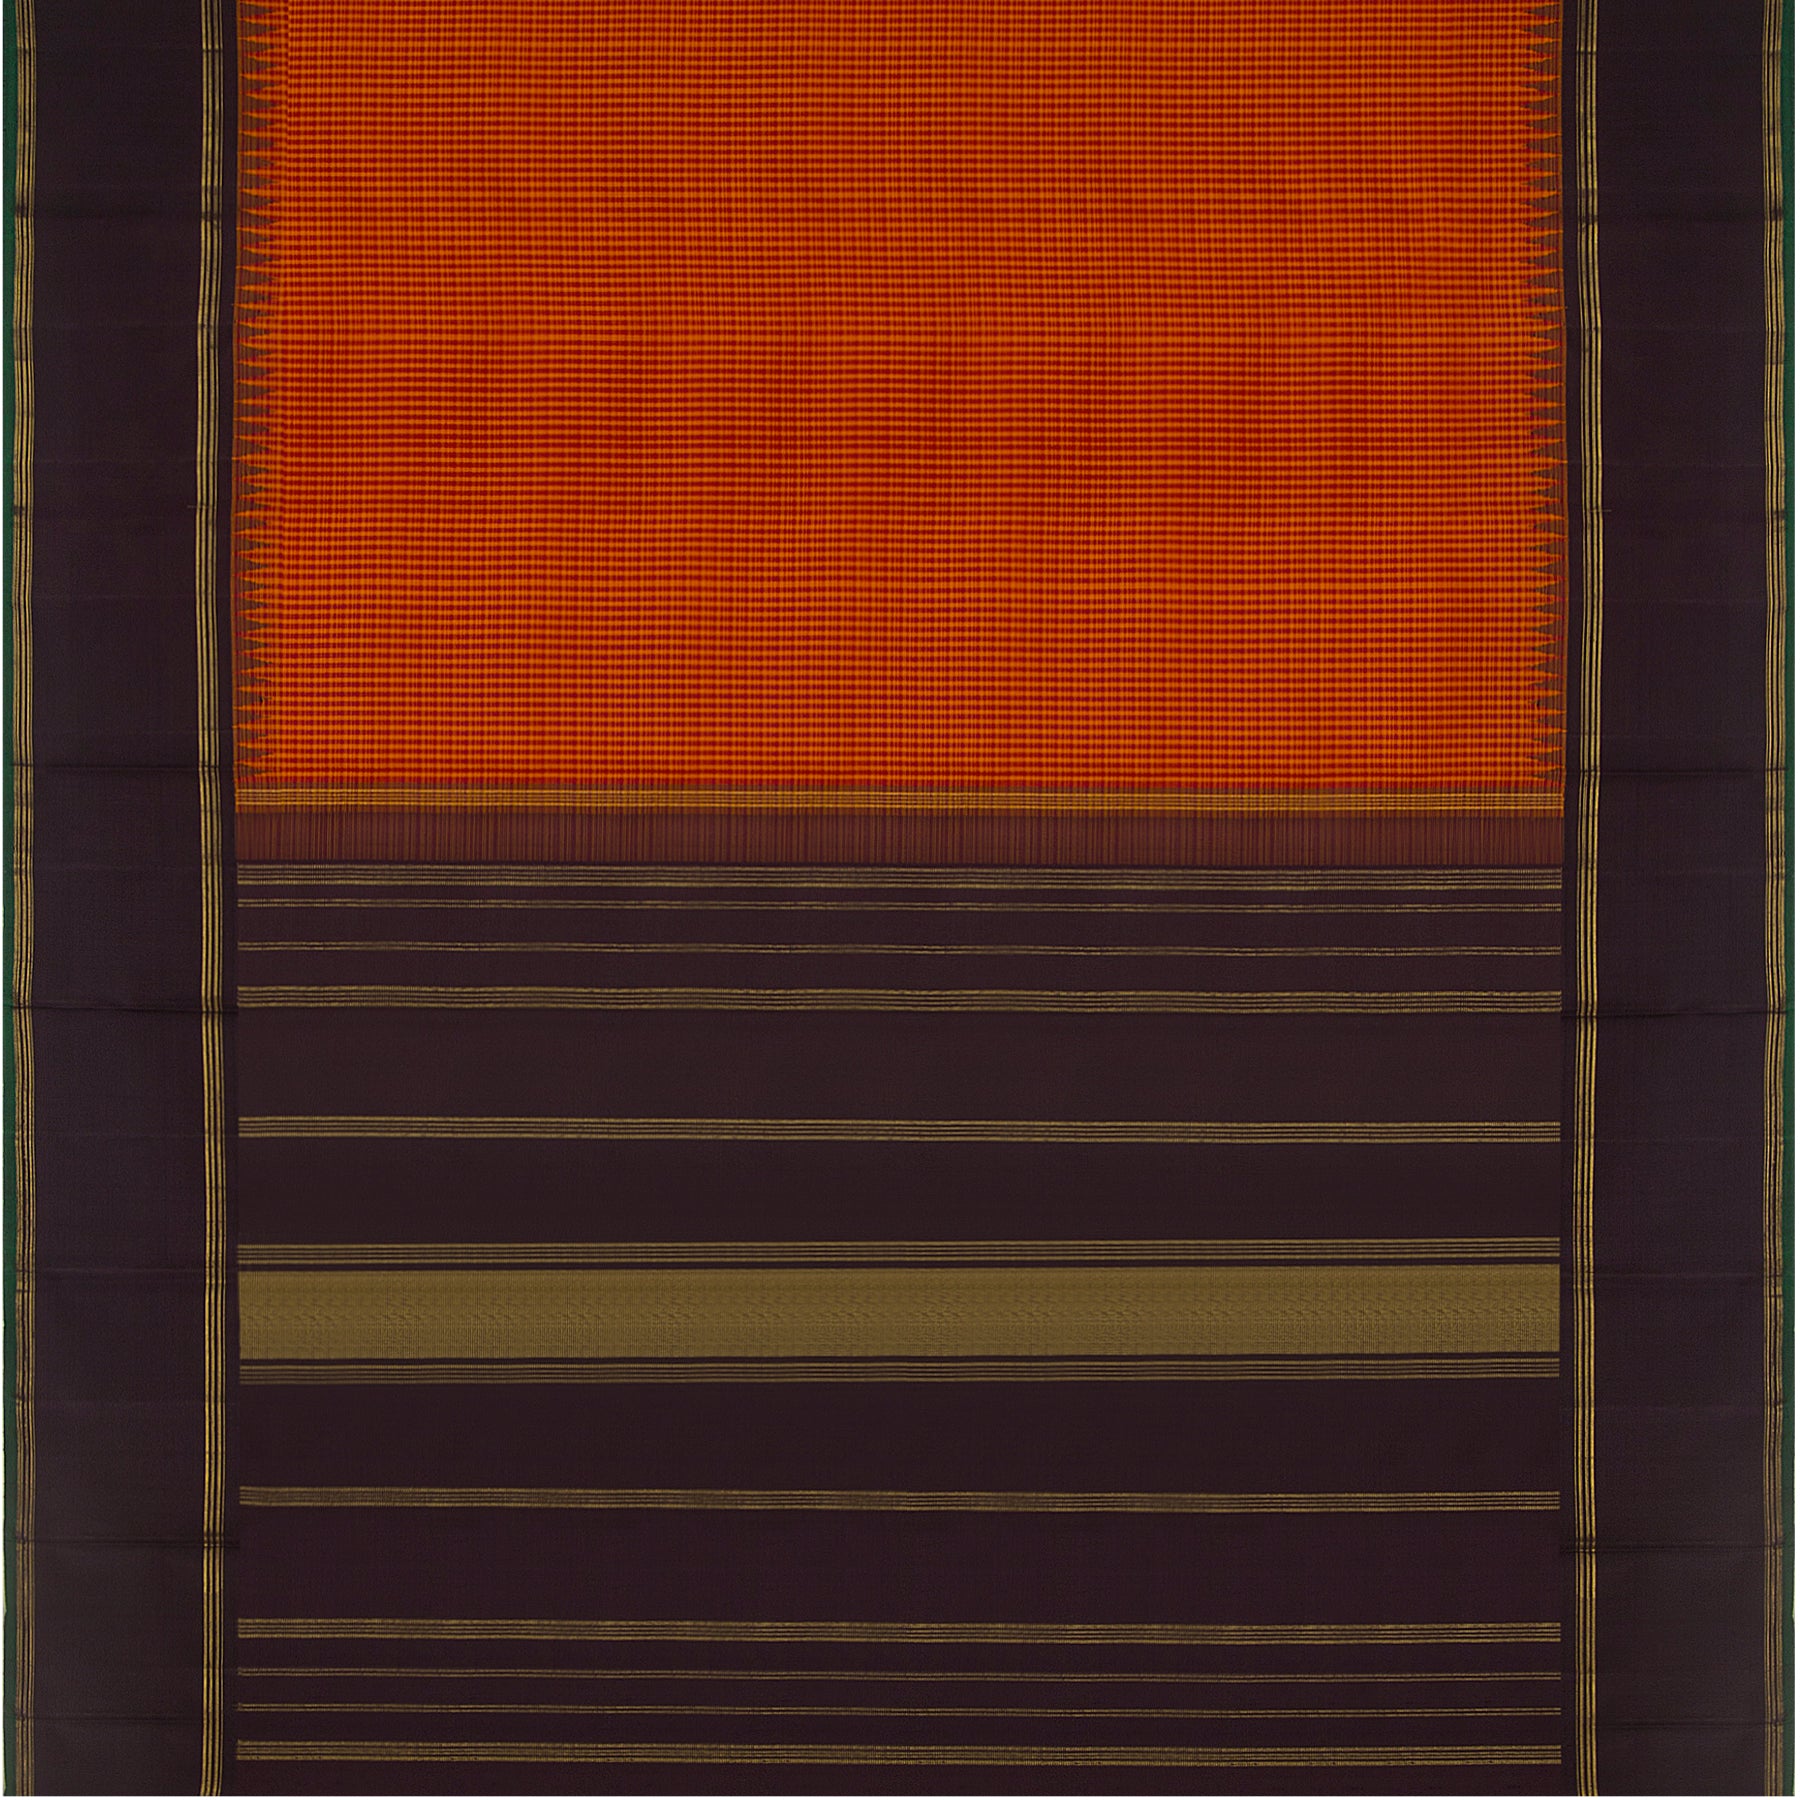 Kanakavalli Kanjivaram Silk Sari 23-520-HS001-14949 - Full View